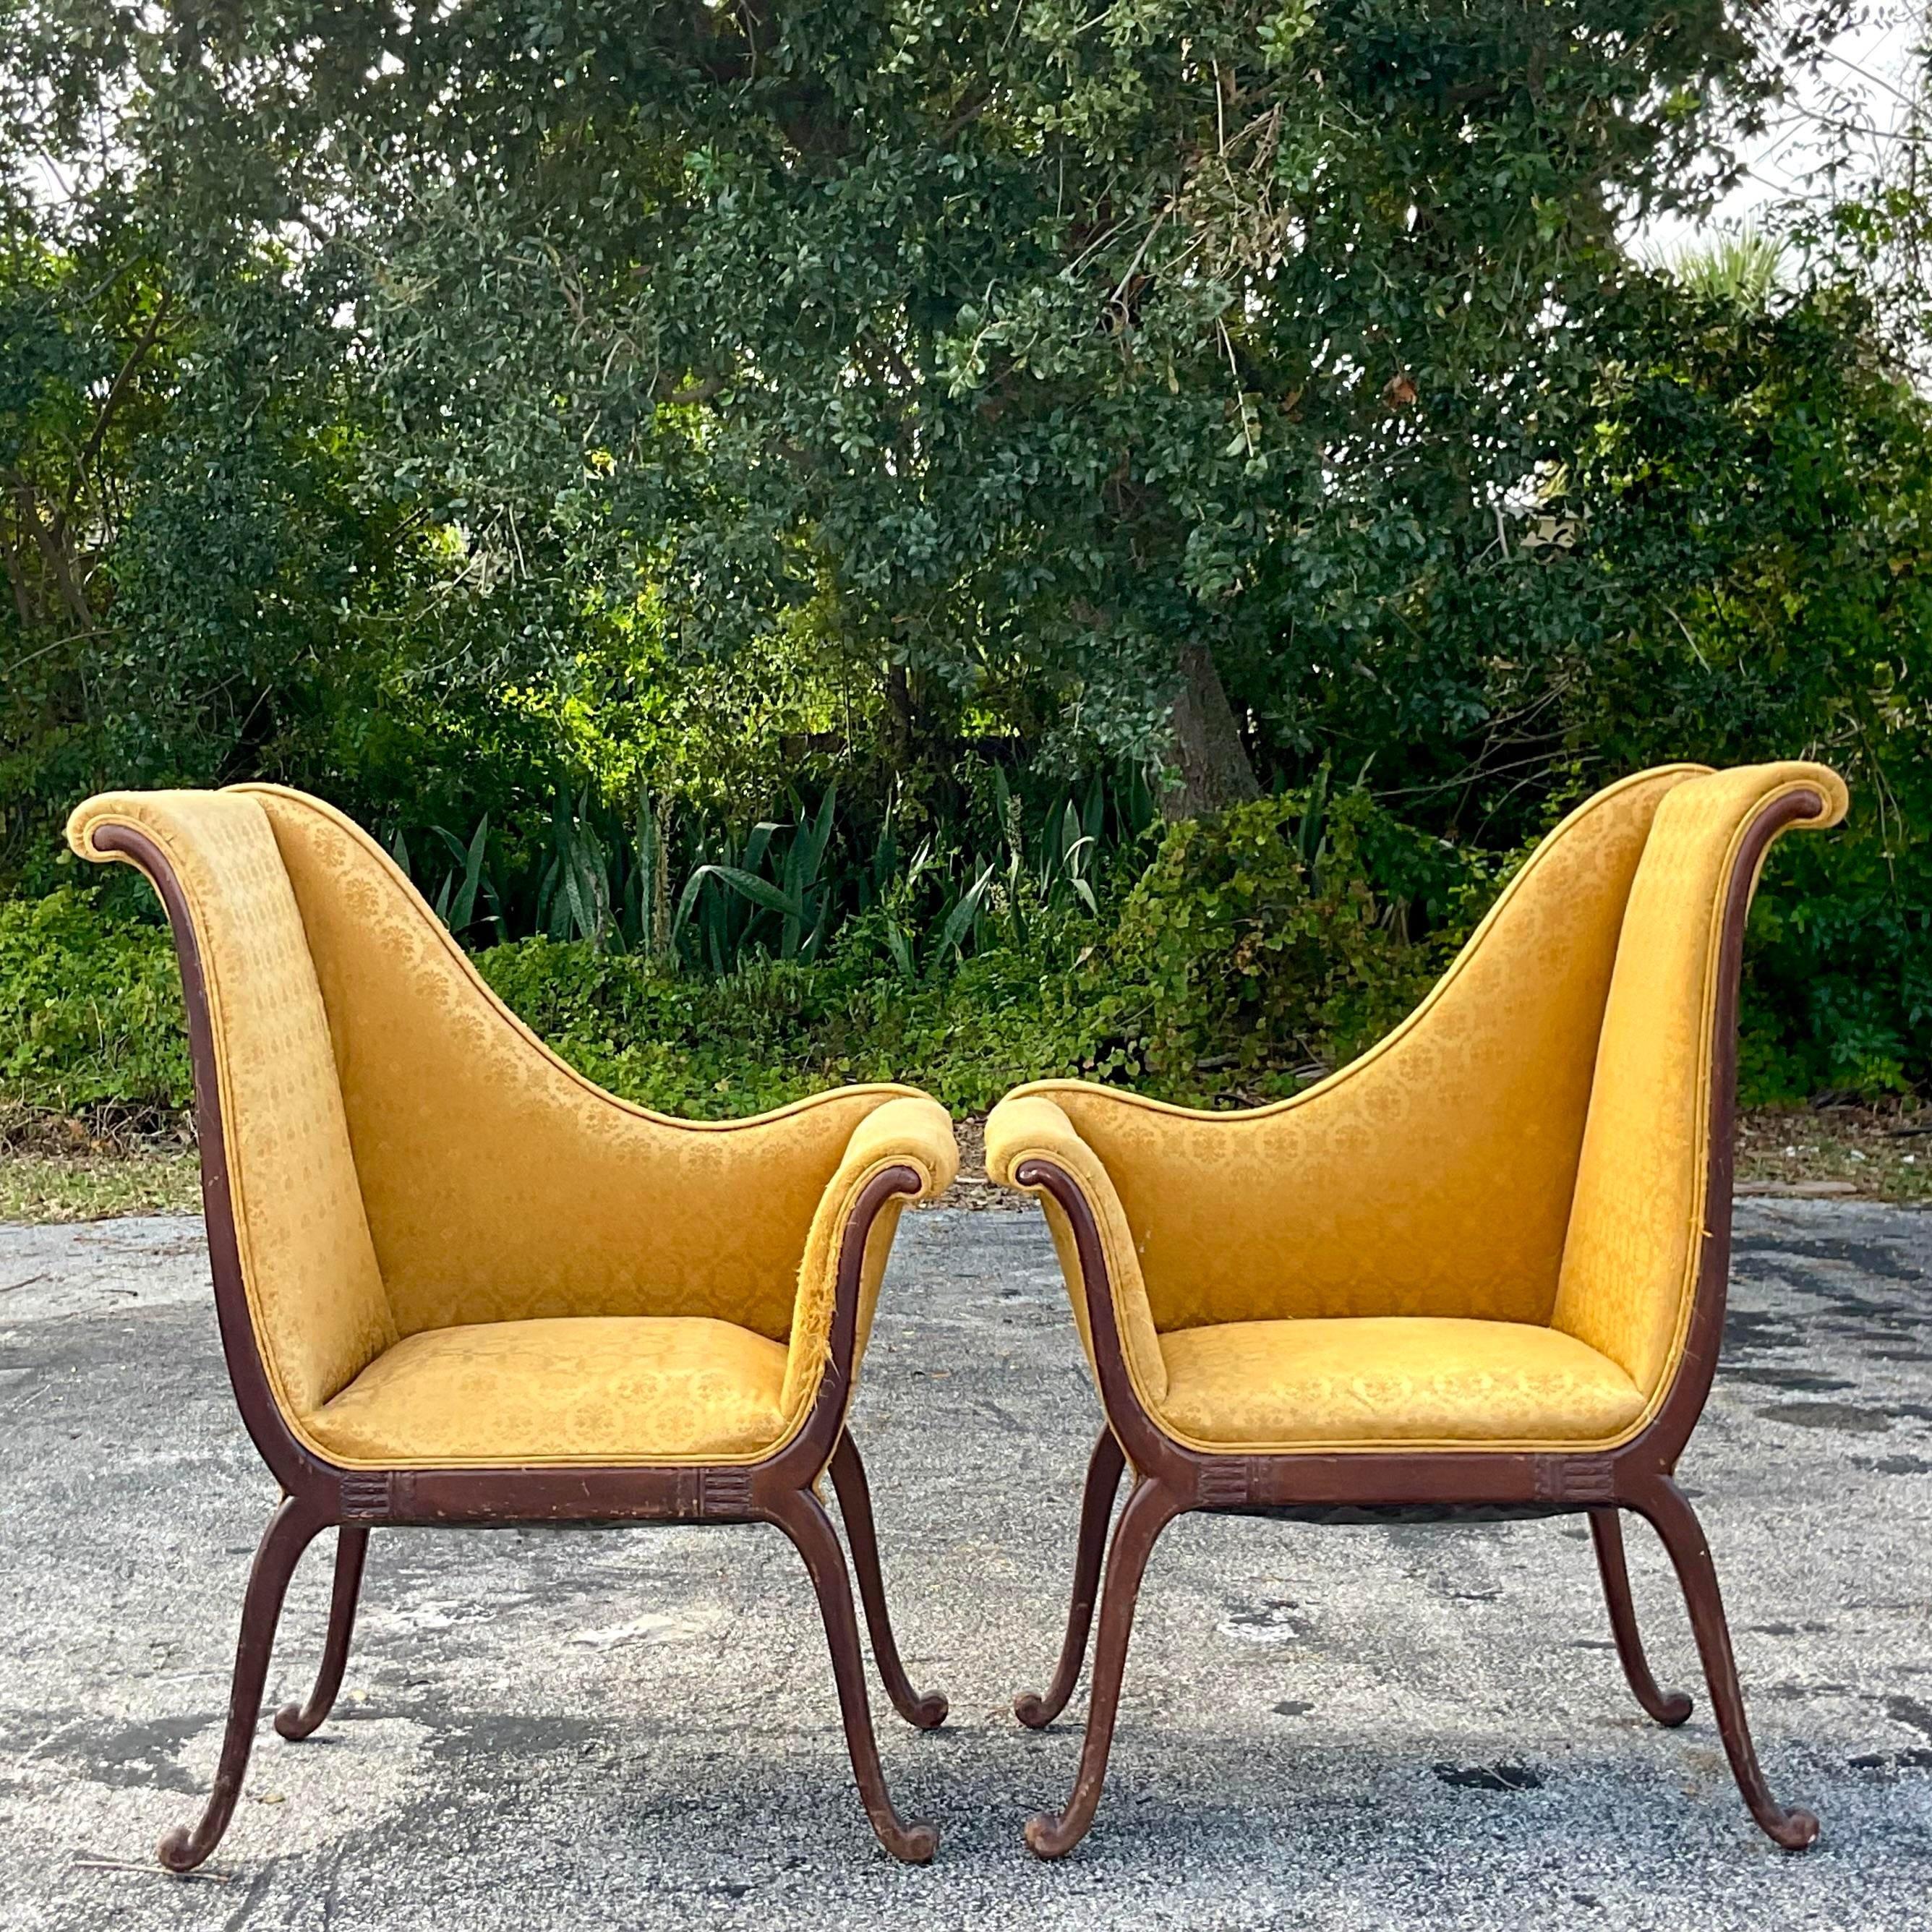 20th Century Vintage Regency Parker Deux Chairs - a Pair For Sale